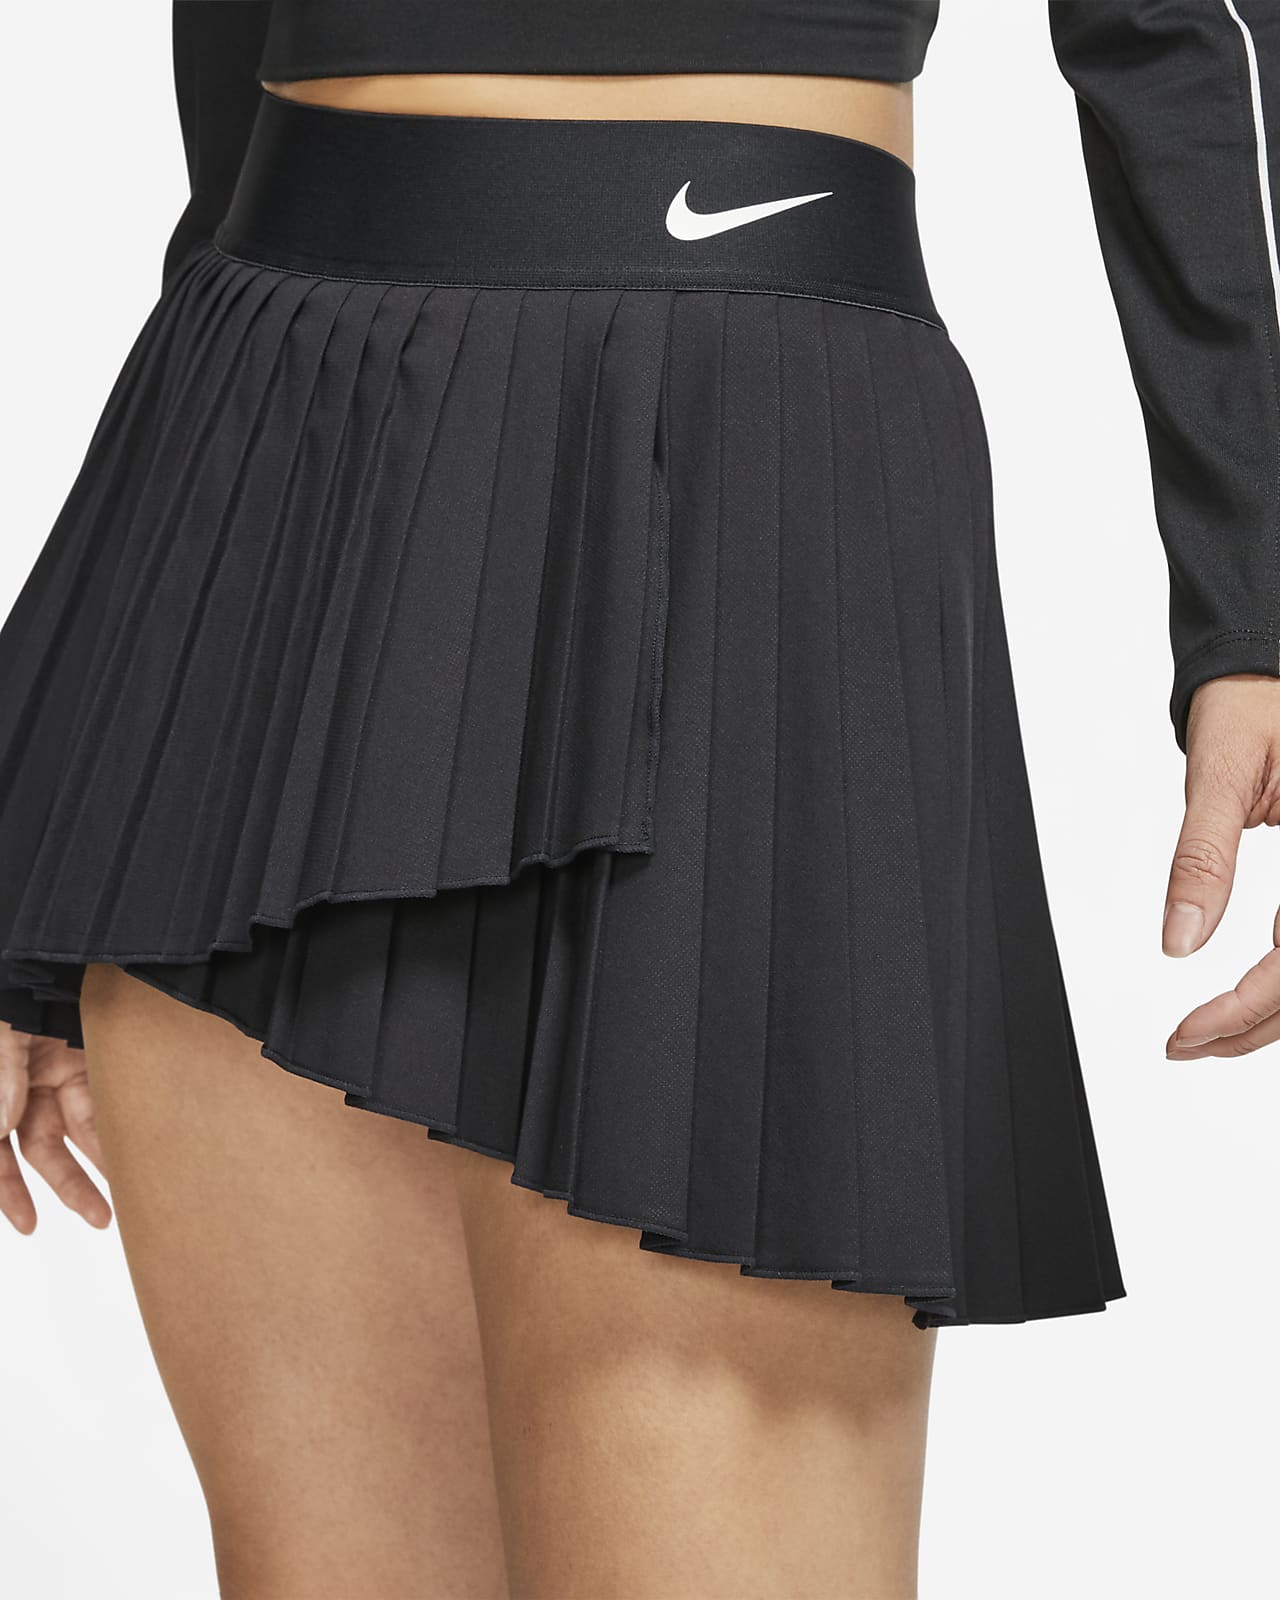 nike tennis pleated skirt